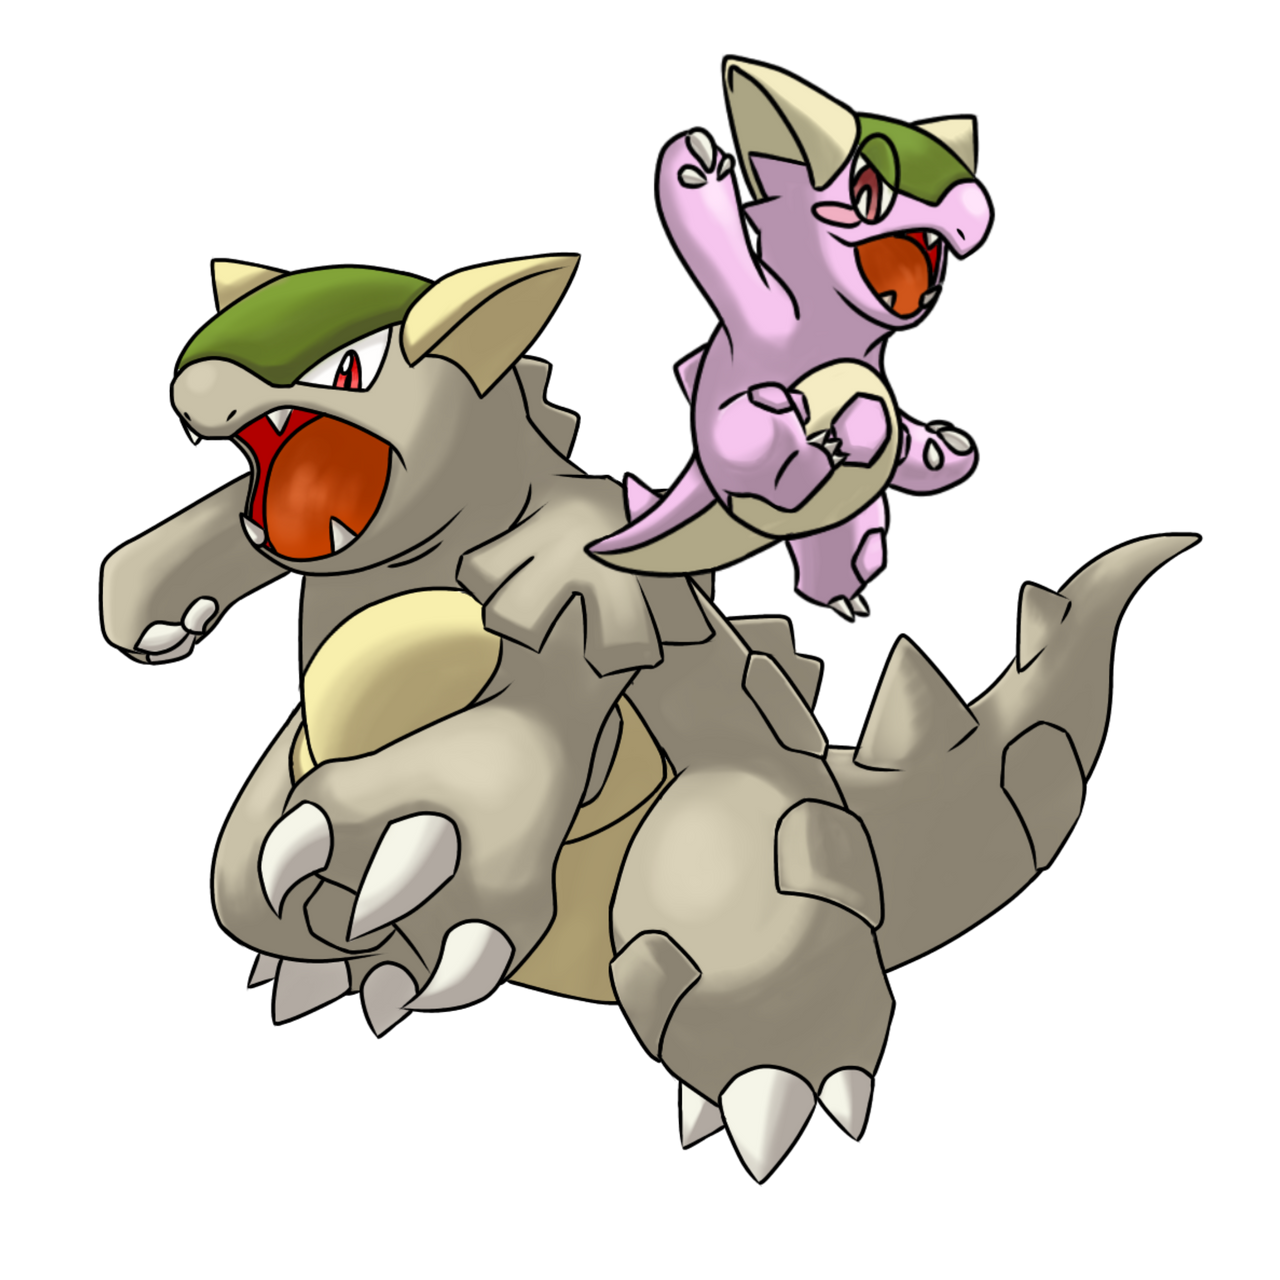 SHINY KANGASKHAN - Shiny and Special Pokémon - Silver - Pokemon